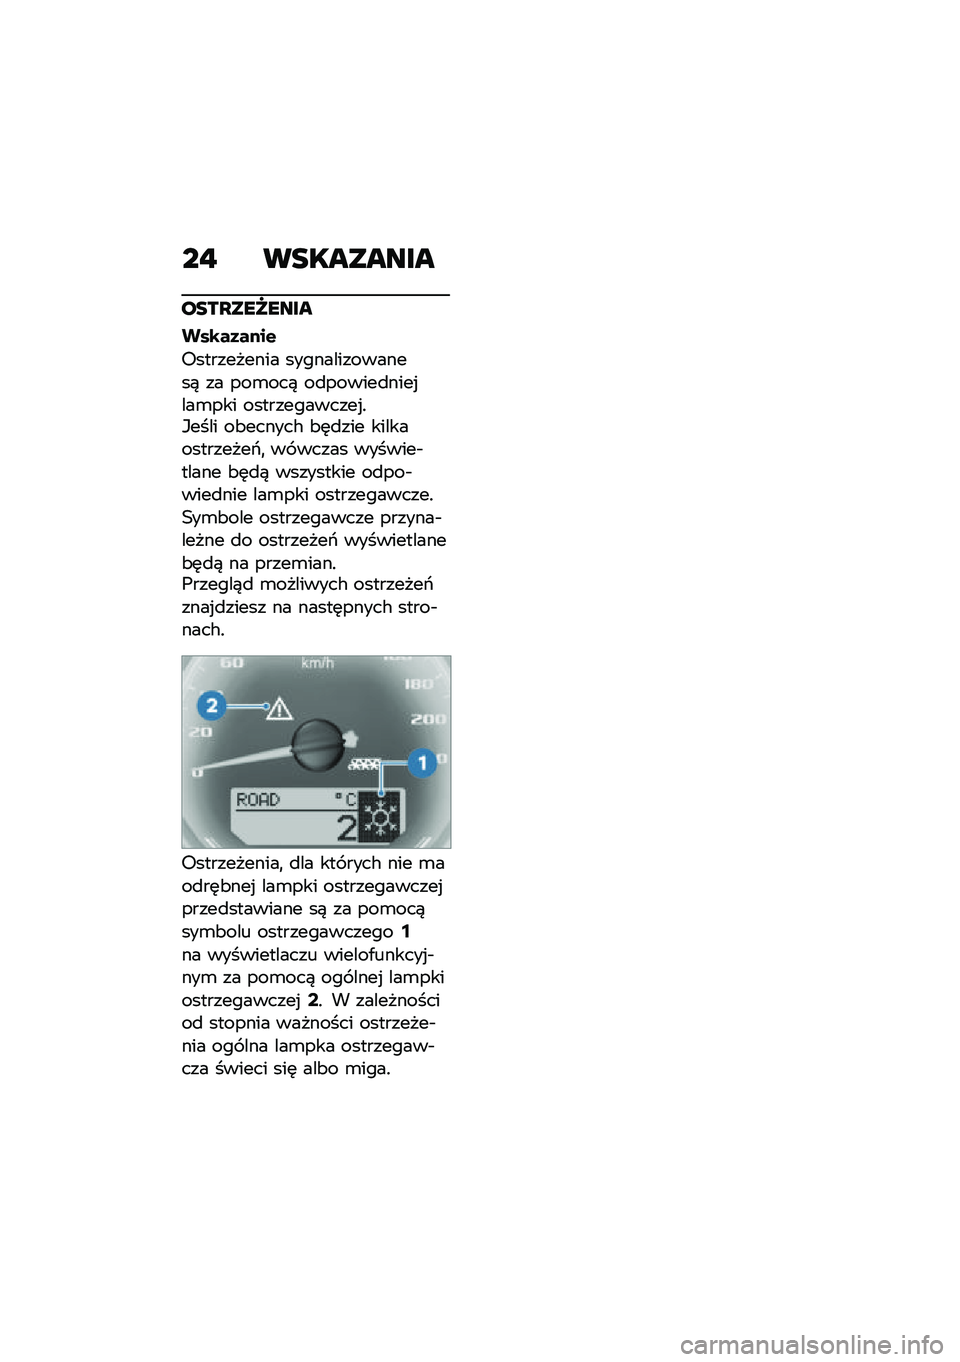 BMW MOTORRAD R NINE T URVAN G/S 2020  Instrukcja obsługi (in Polish) ��" ���������
����Q���U����
���\b��3����&
�6���������� ���������������) �� ���\b���) ��
������
����%���\b��� �����������